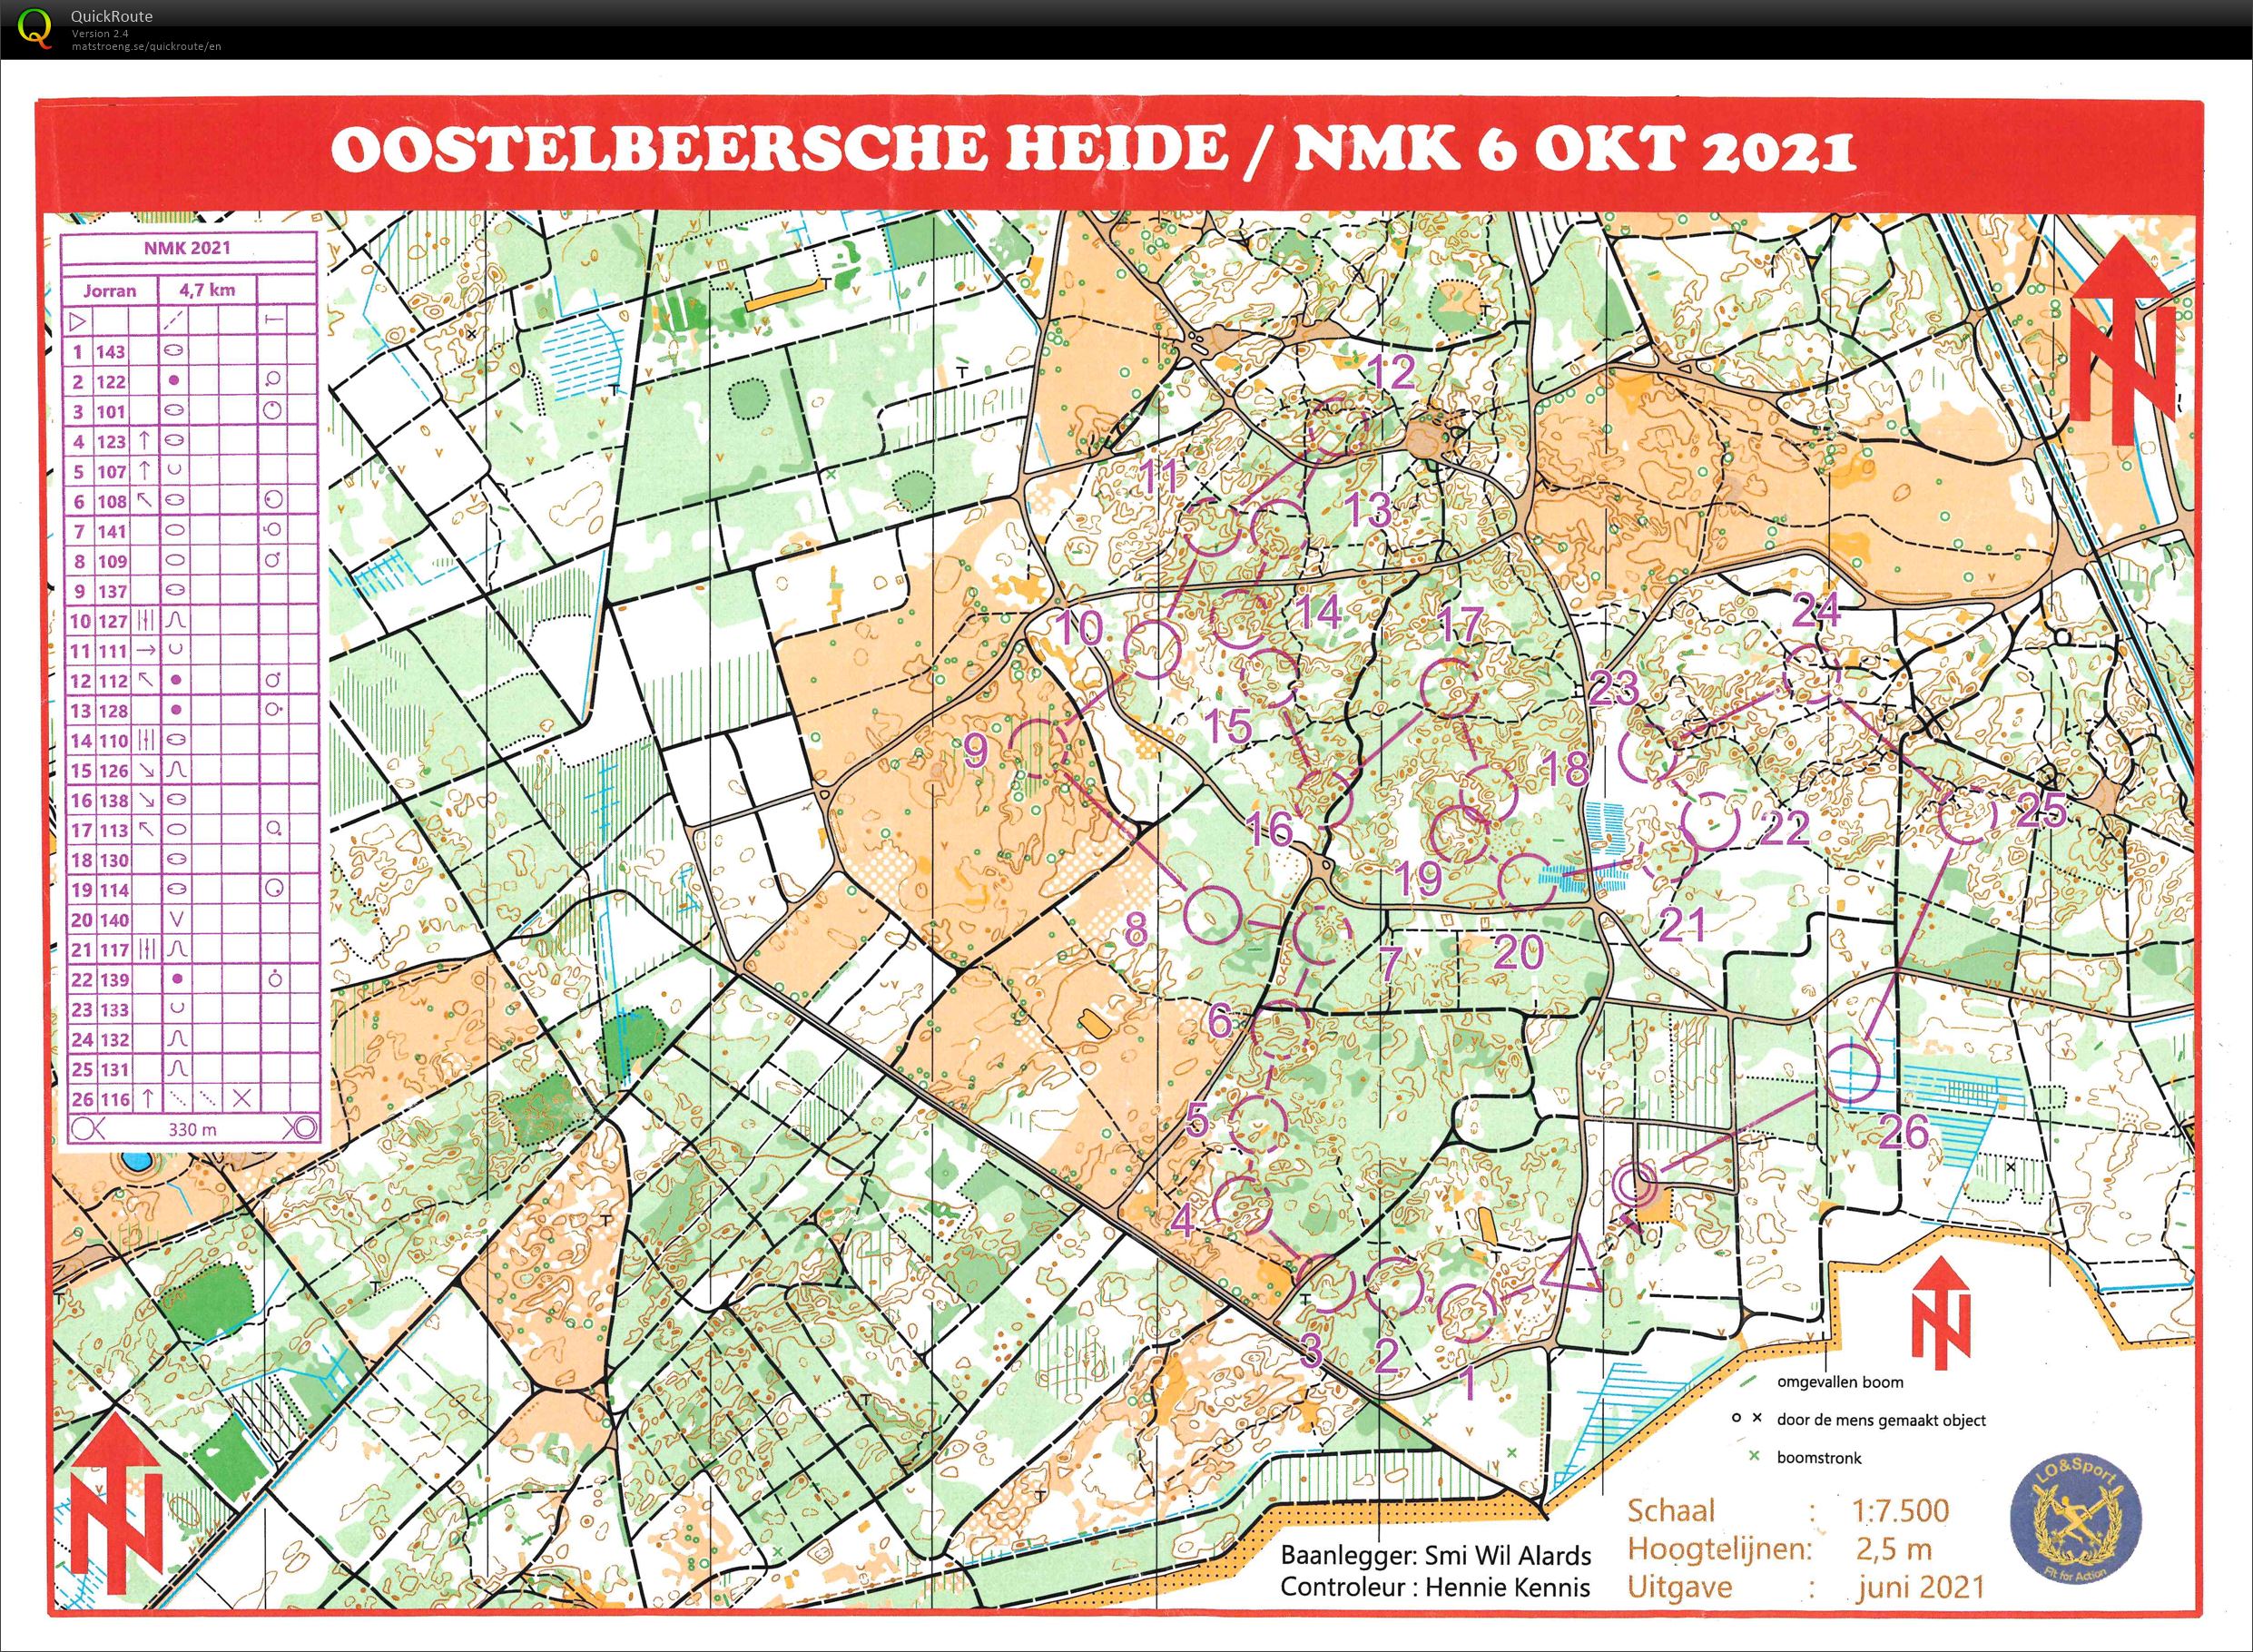 NMK Oostelbeersche Heide (06-10-2021)